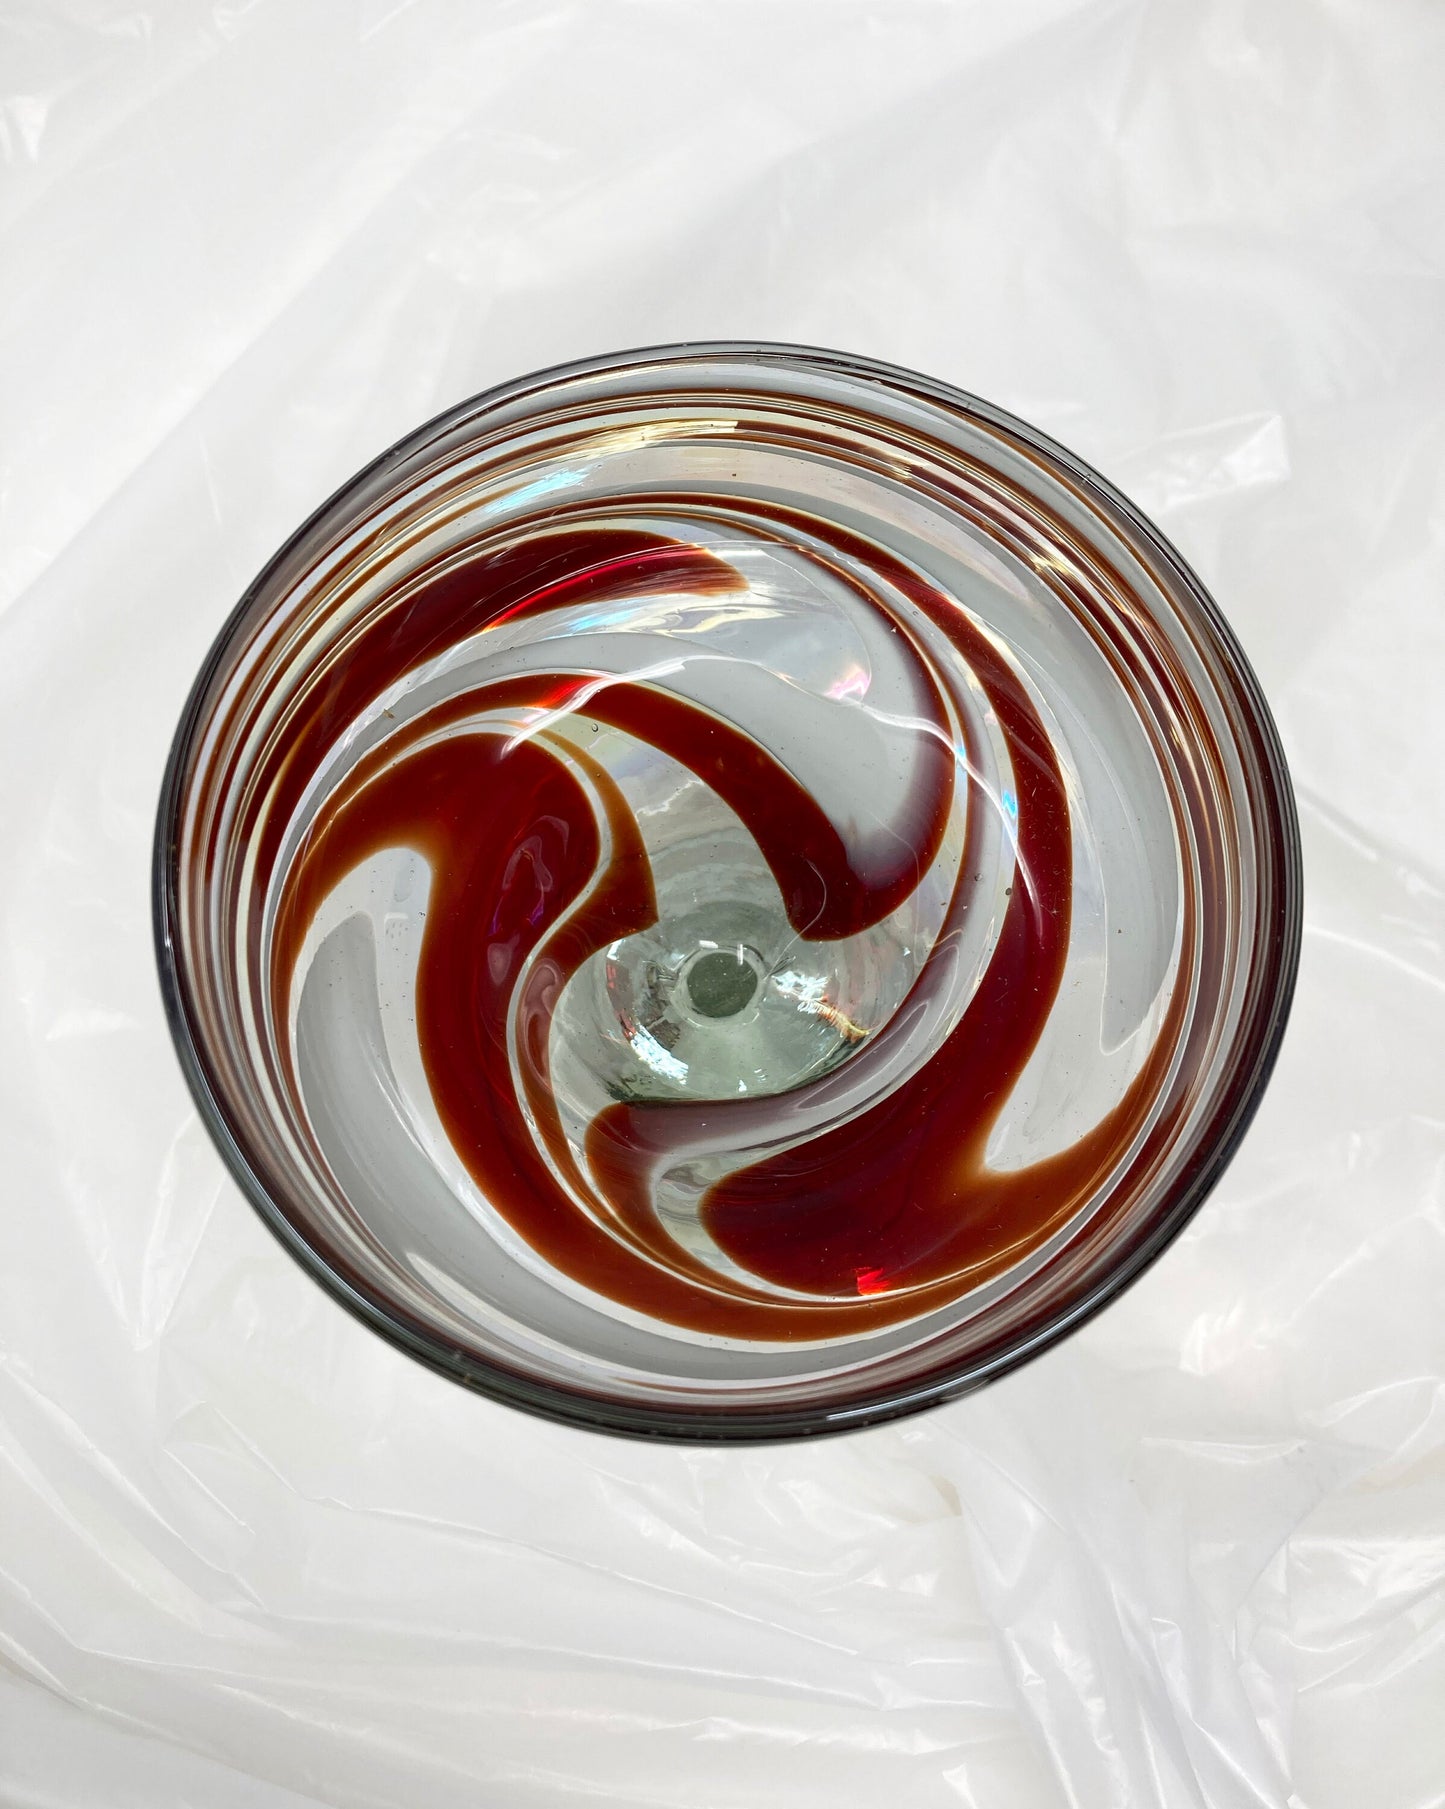 Hand Blown Margarita Glass - Red/White Iridescent Swirl